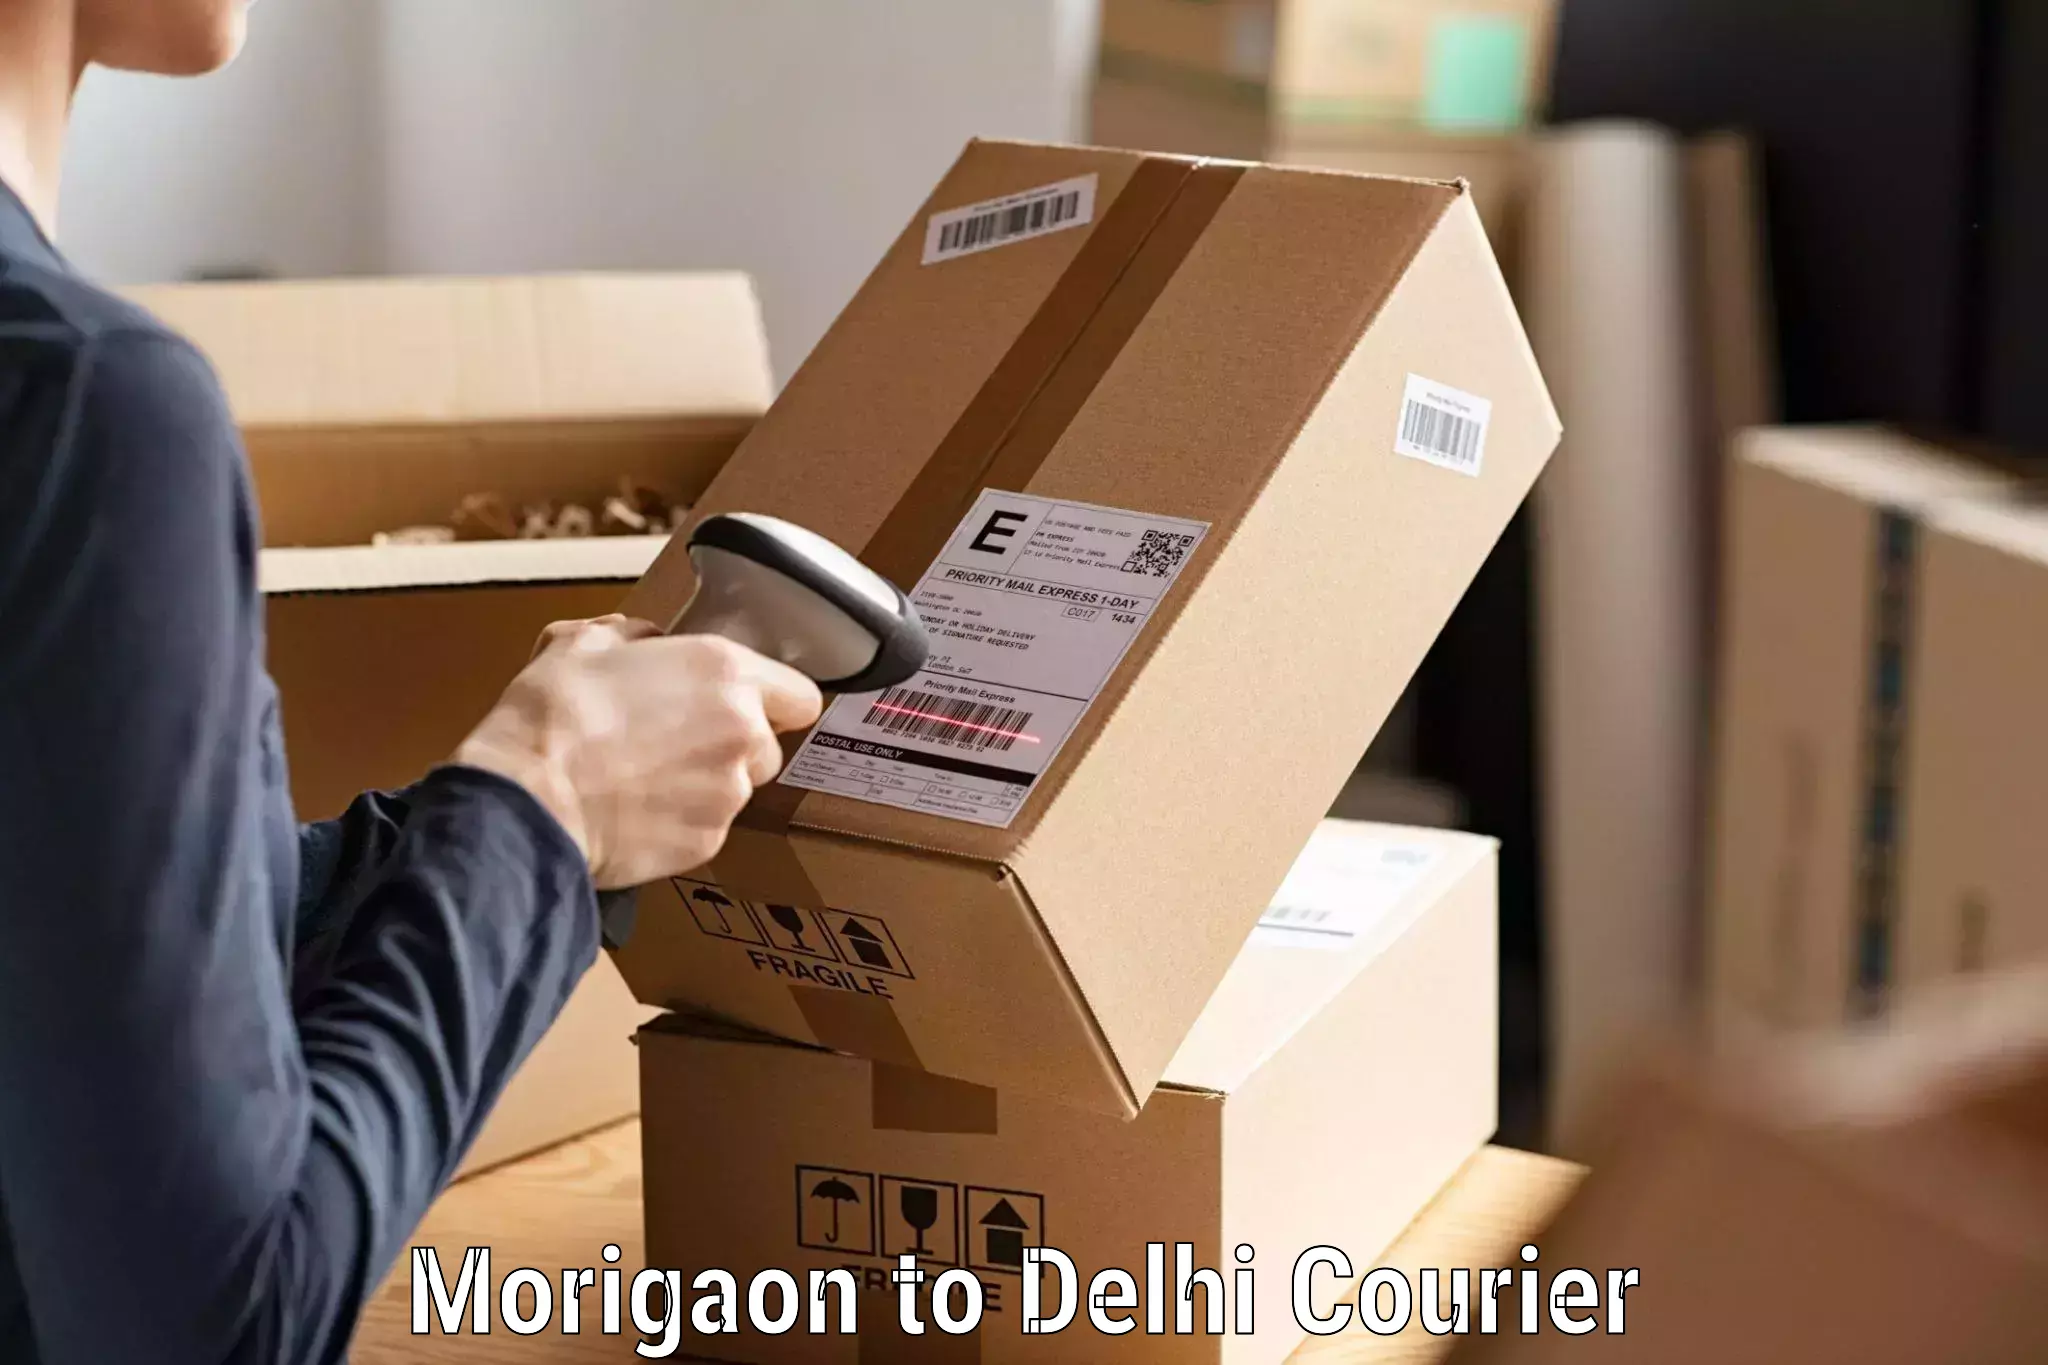 Express logistics providers Morigaon to Delhi